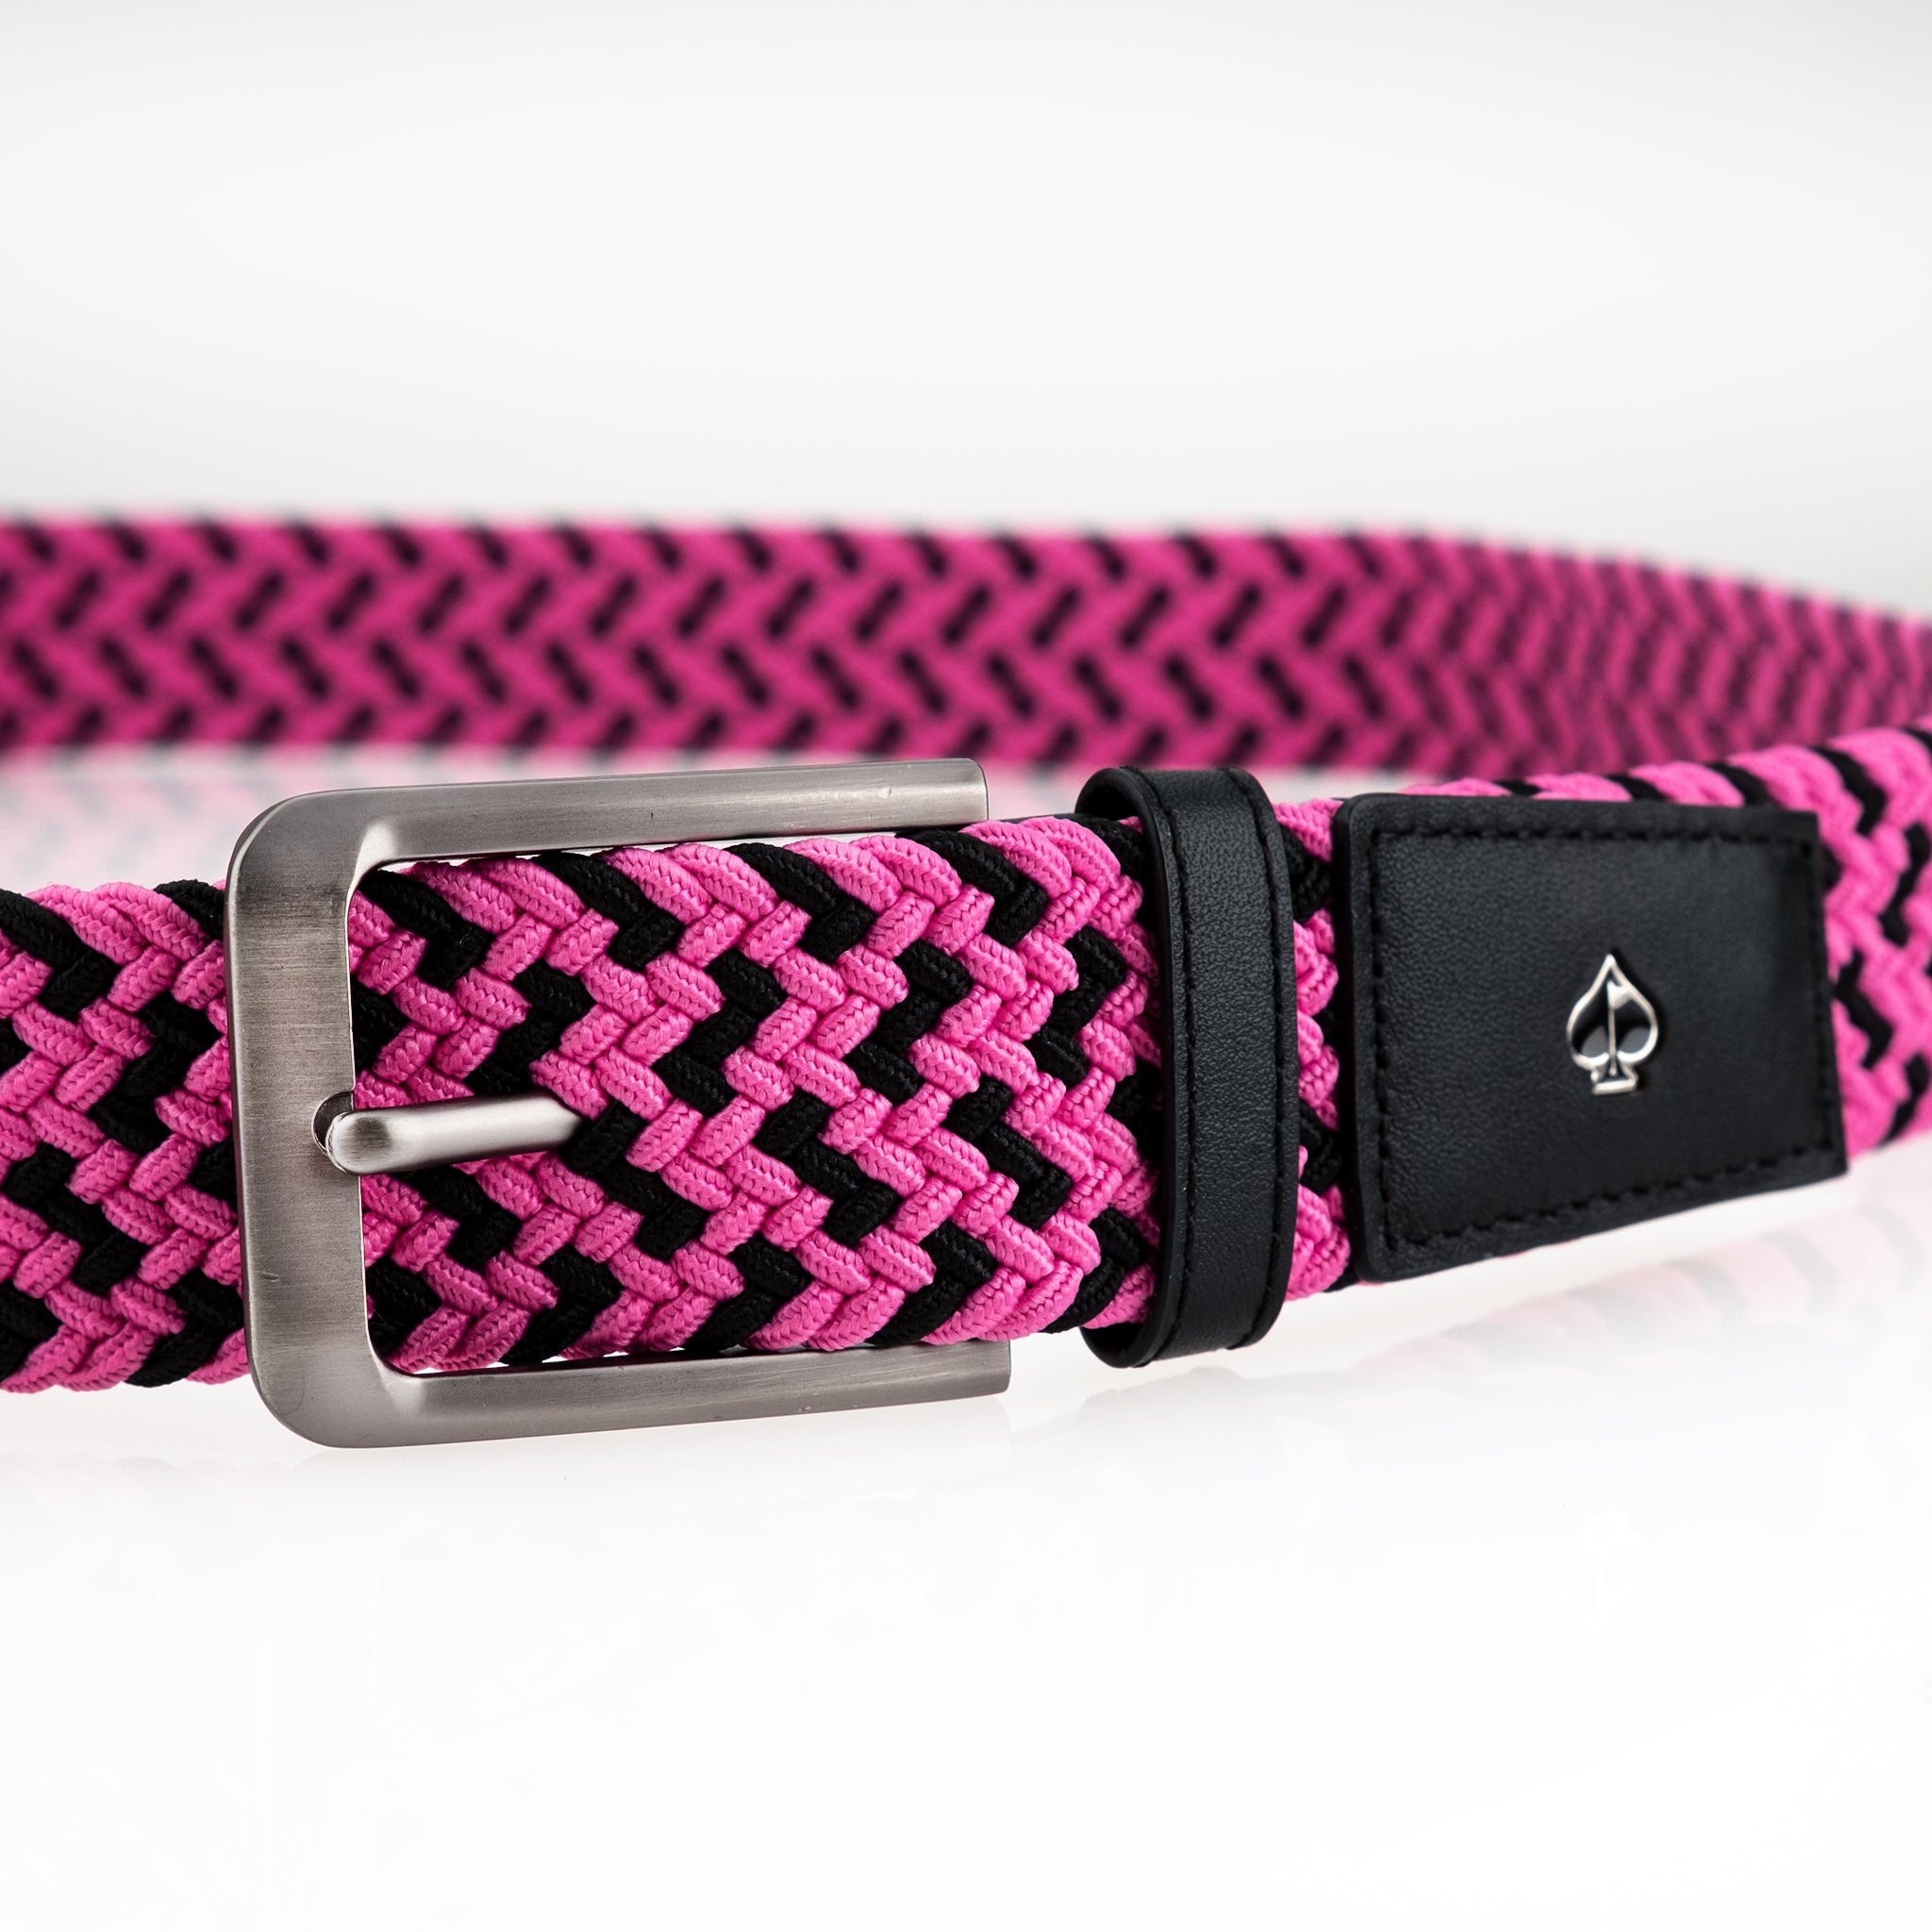 Pins Belt - Pink